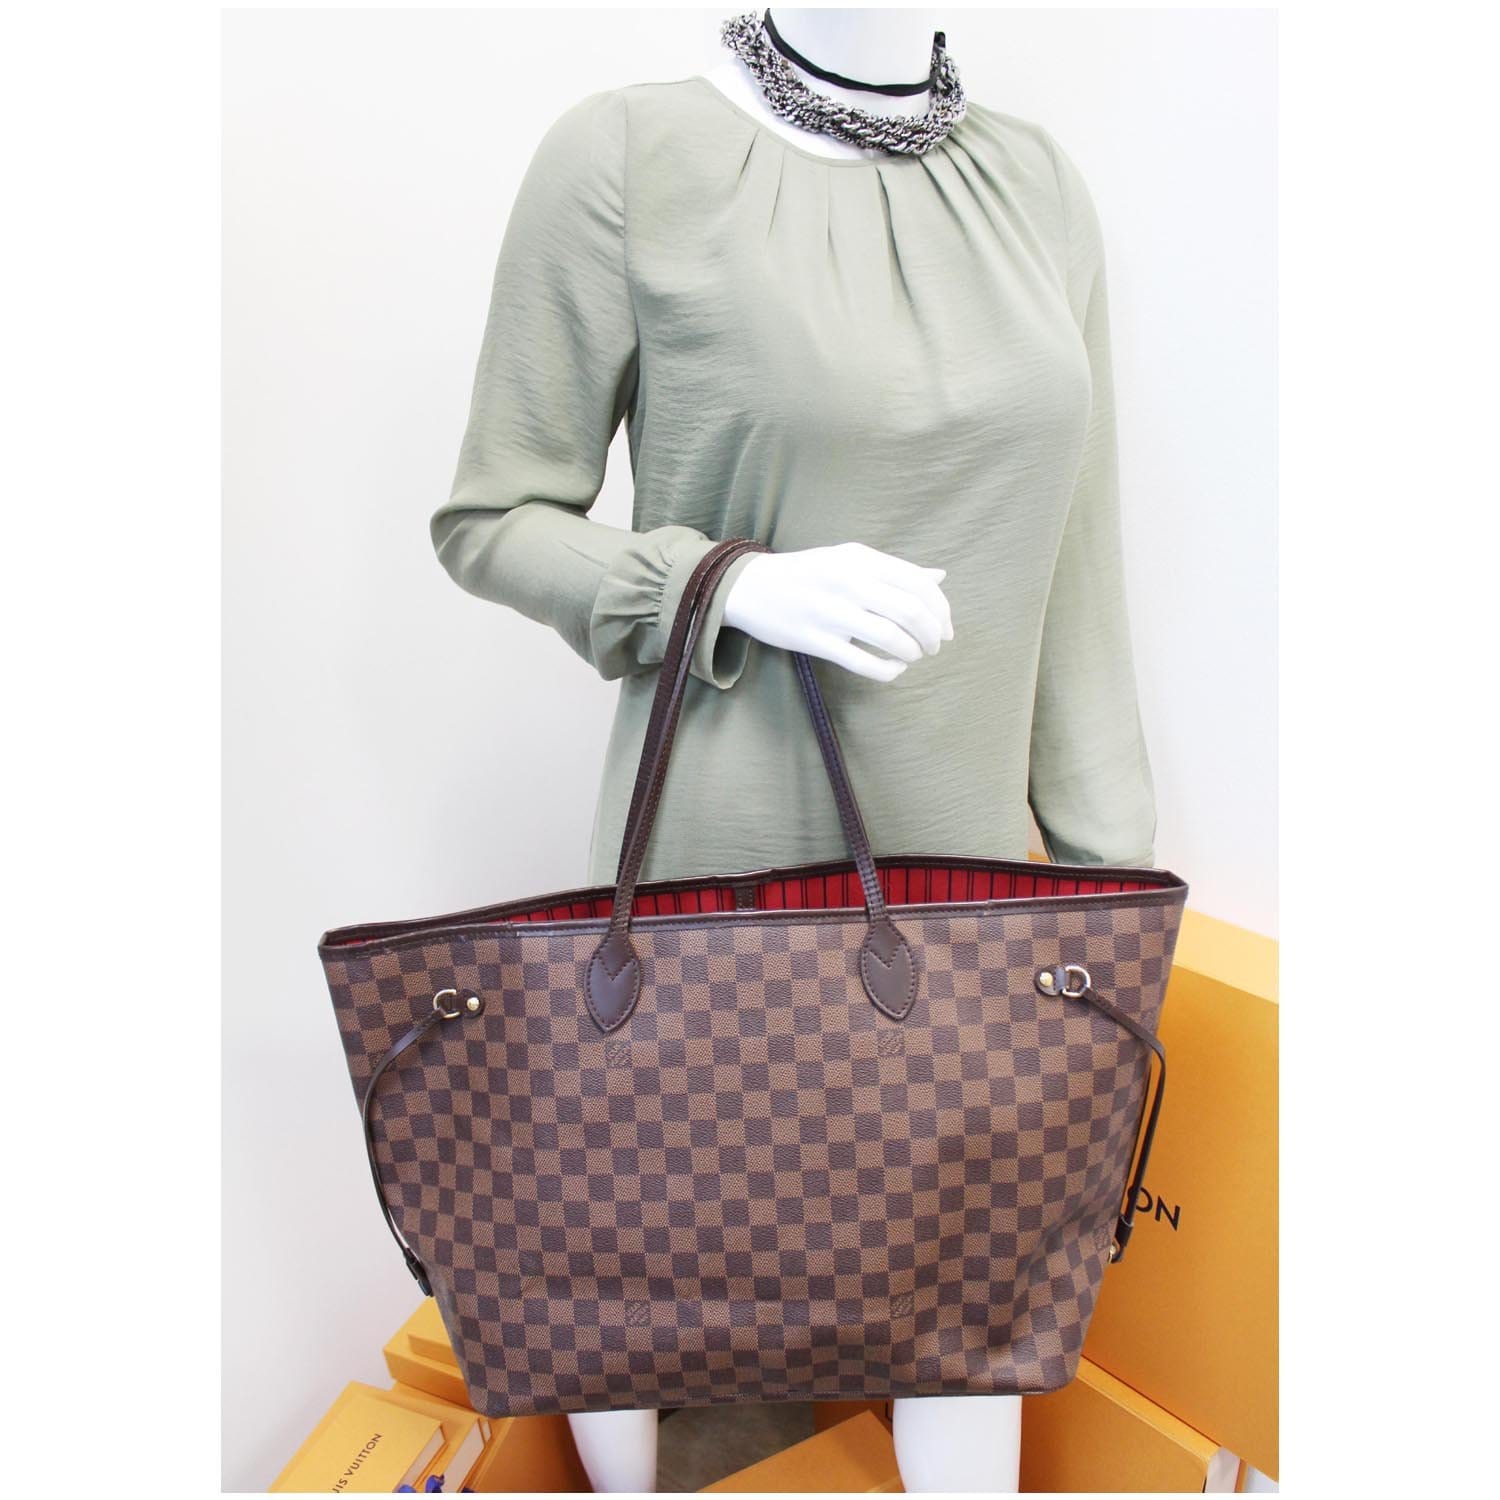 Buy Saint Laurent Bags & Handbags online - Women - 507 products